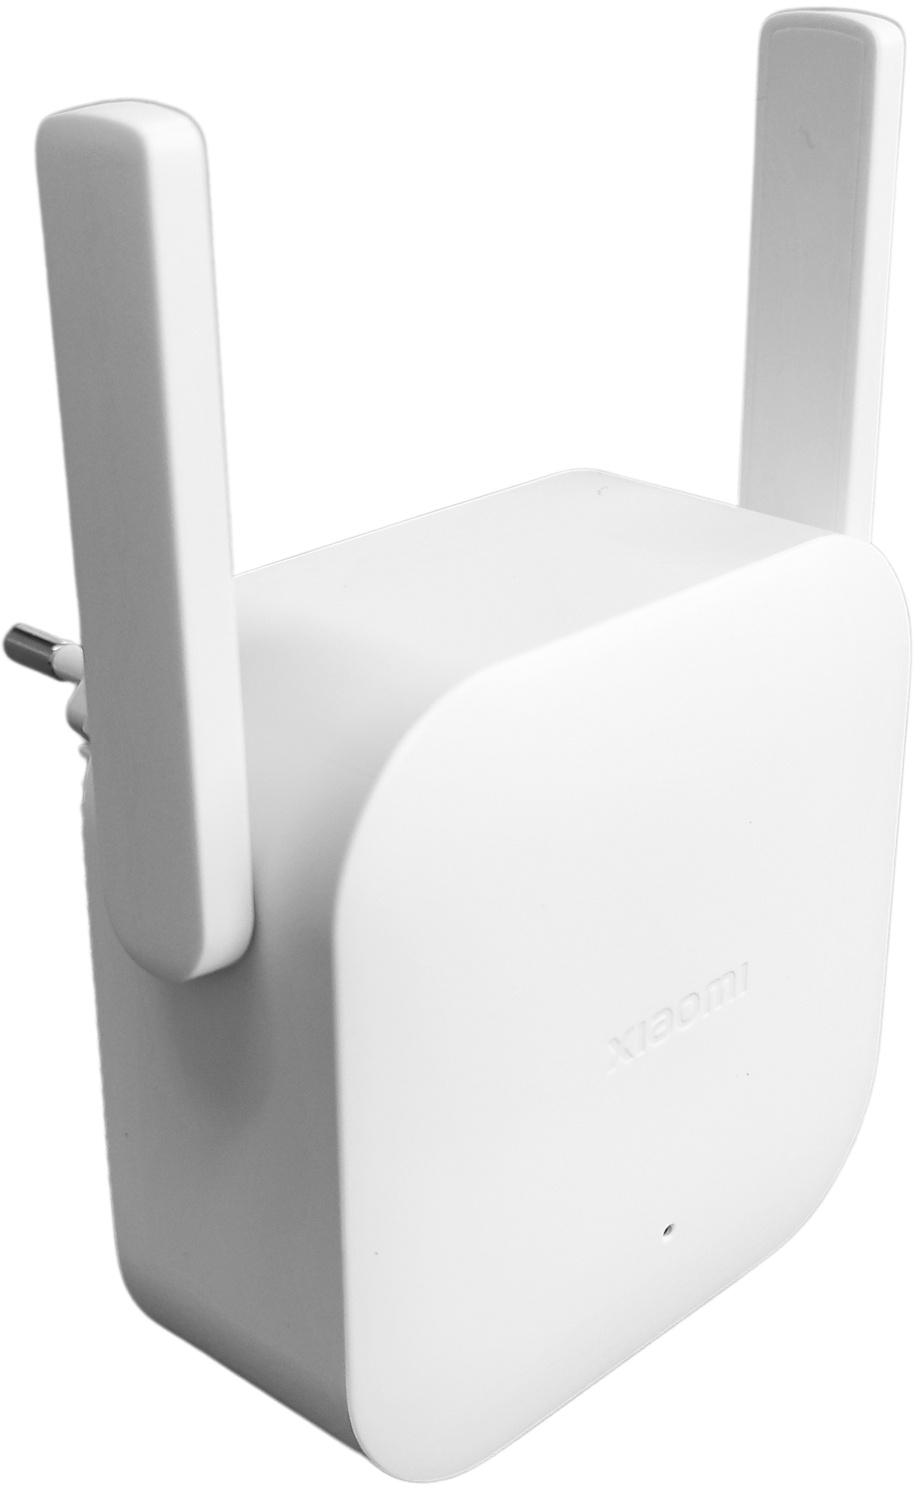 Xiaomi Wi-Fi Range Extender N300 - specyfikacja i dane techniczne urządzenia sieciowego: